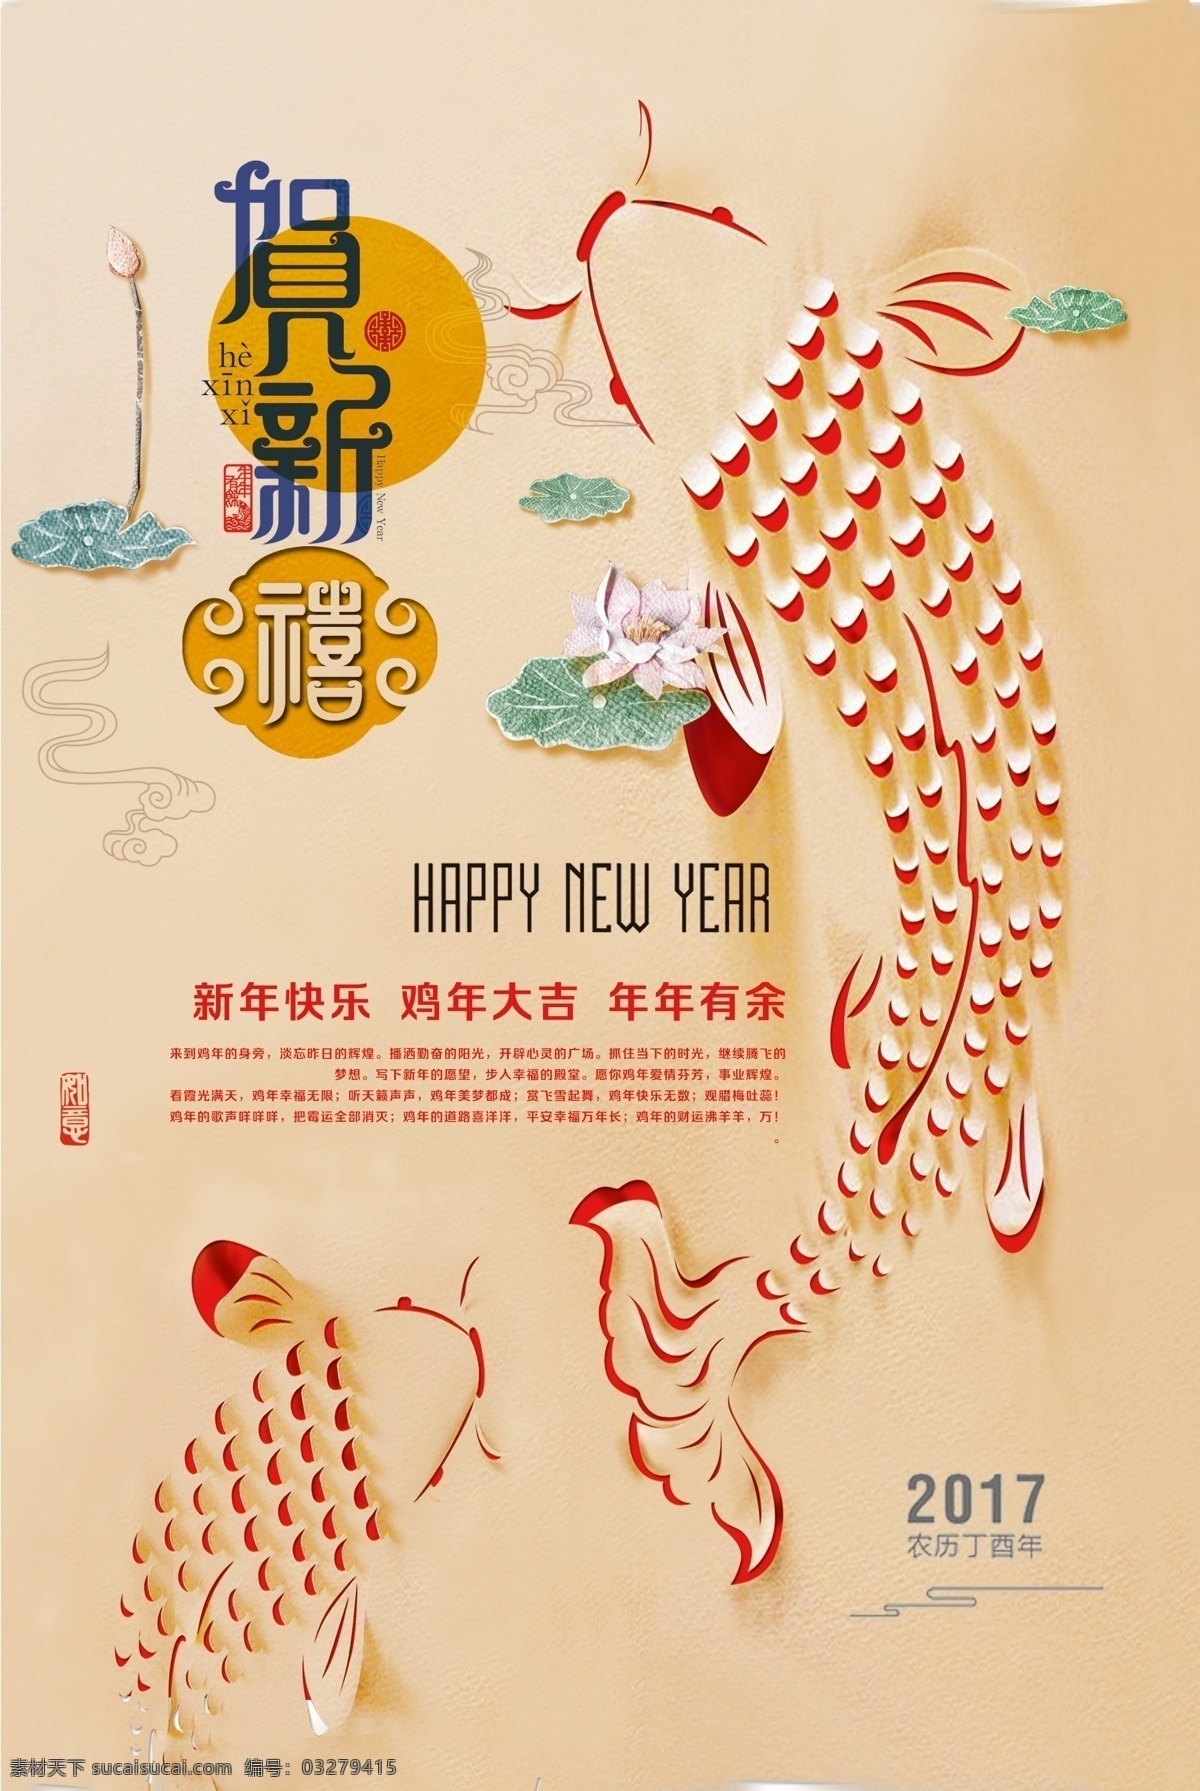 新年 年货 节 海报 吉祥 年货节 双1 1双12 促销 中国 元素 分层